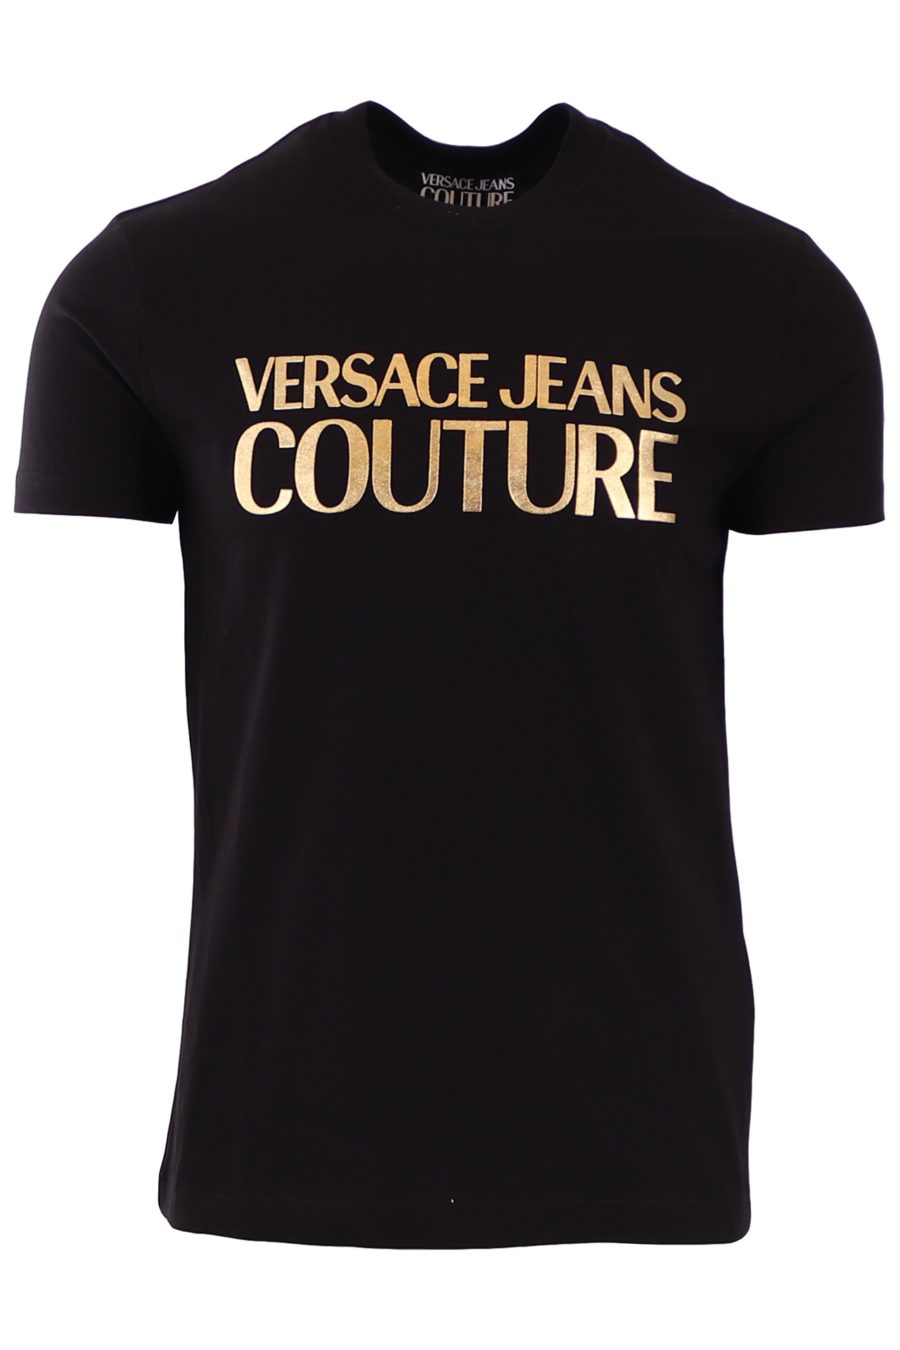 Camiseta Versace Jeans Couture negra con logo escrito dorado - 1e8f54979fcbfed4a587966e5a06ae98b2b1c3fe